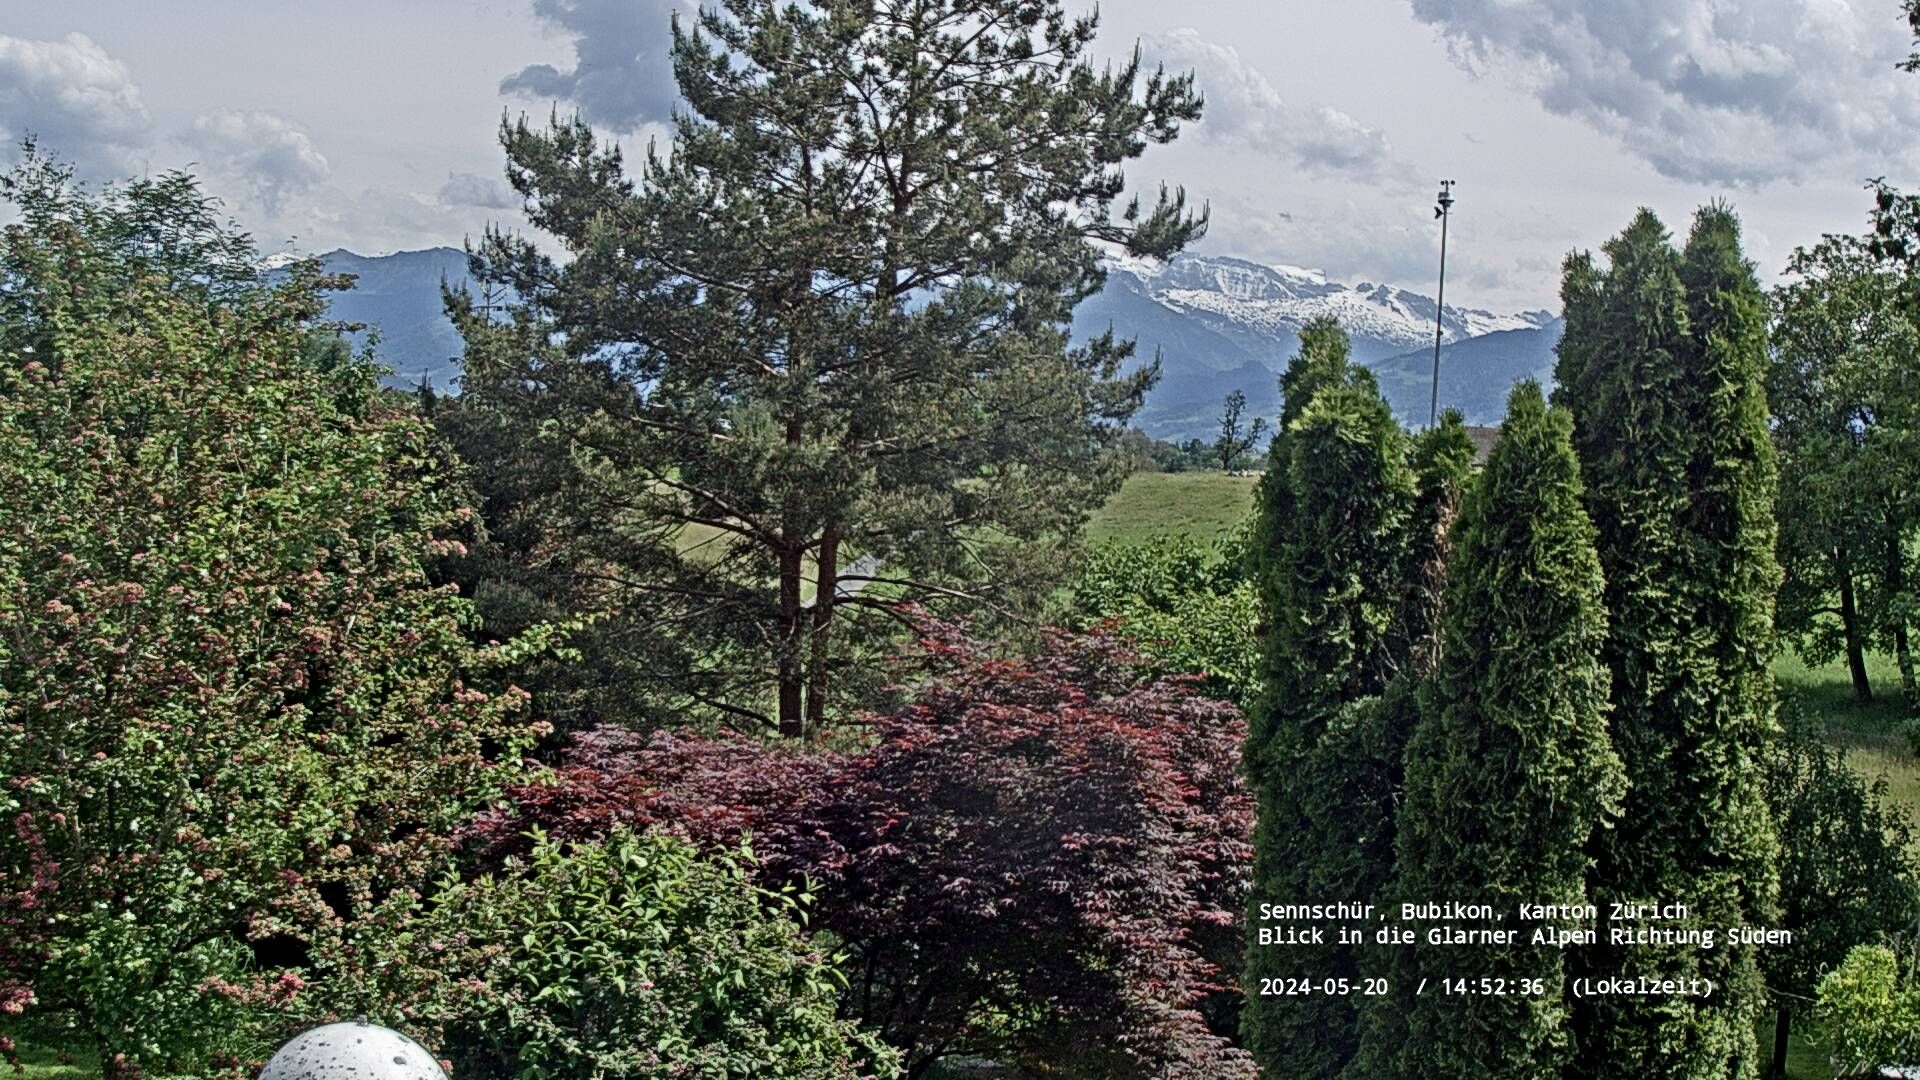 Bubikon › Süd: Glarus Alps